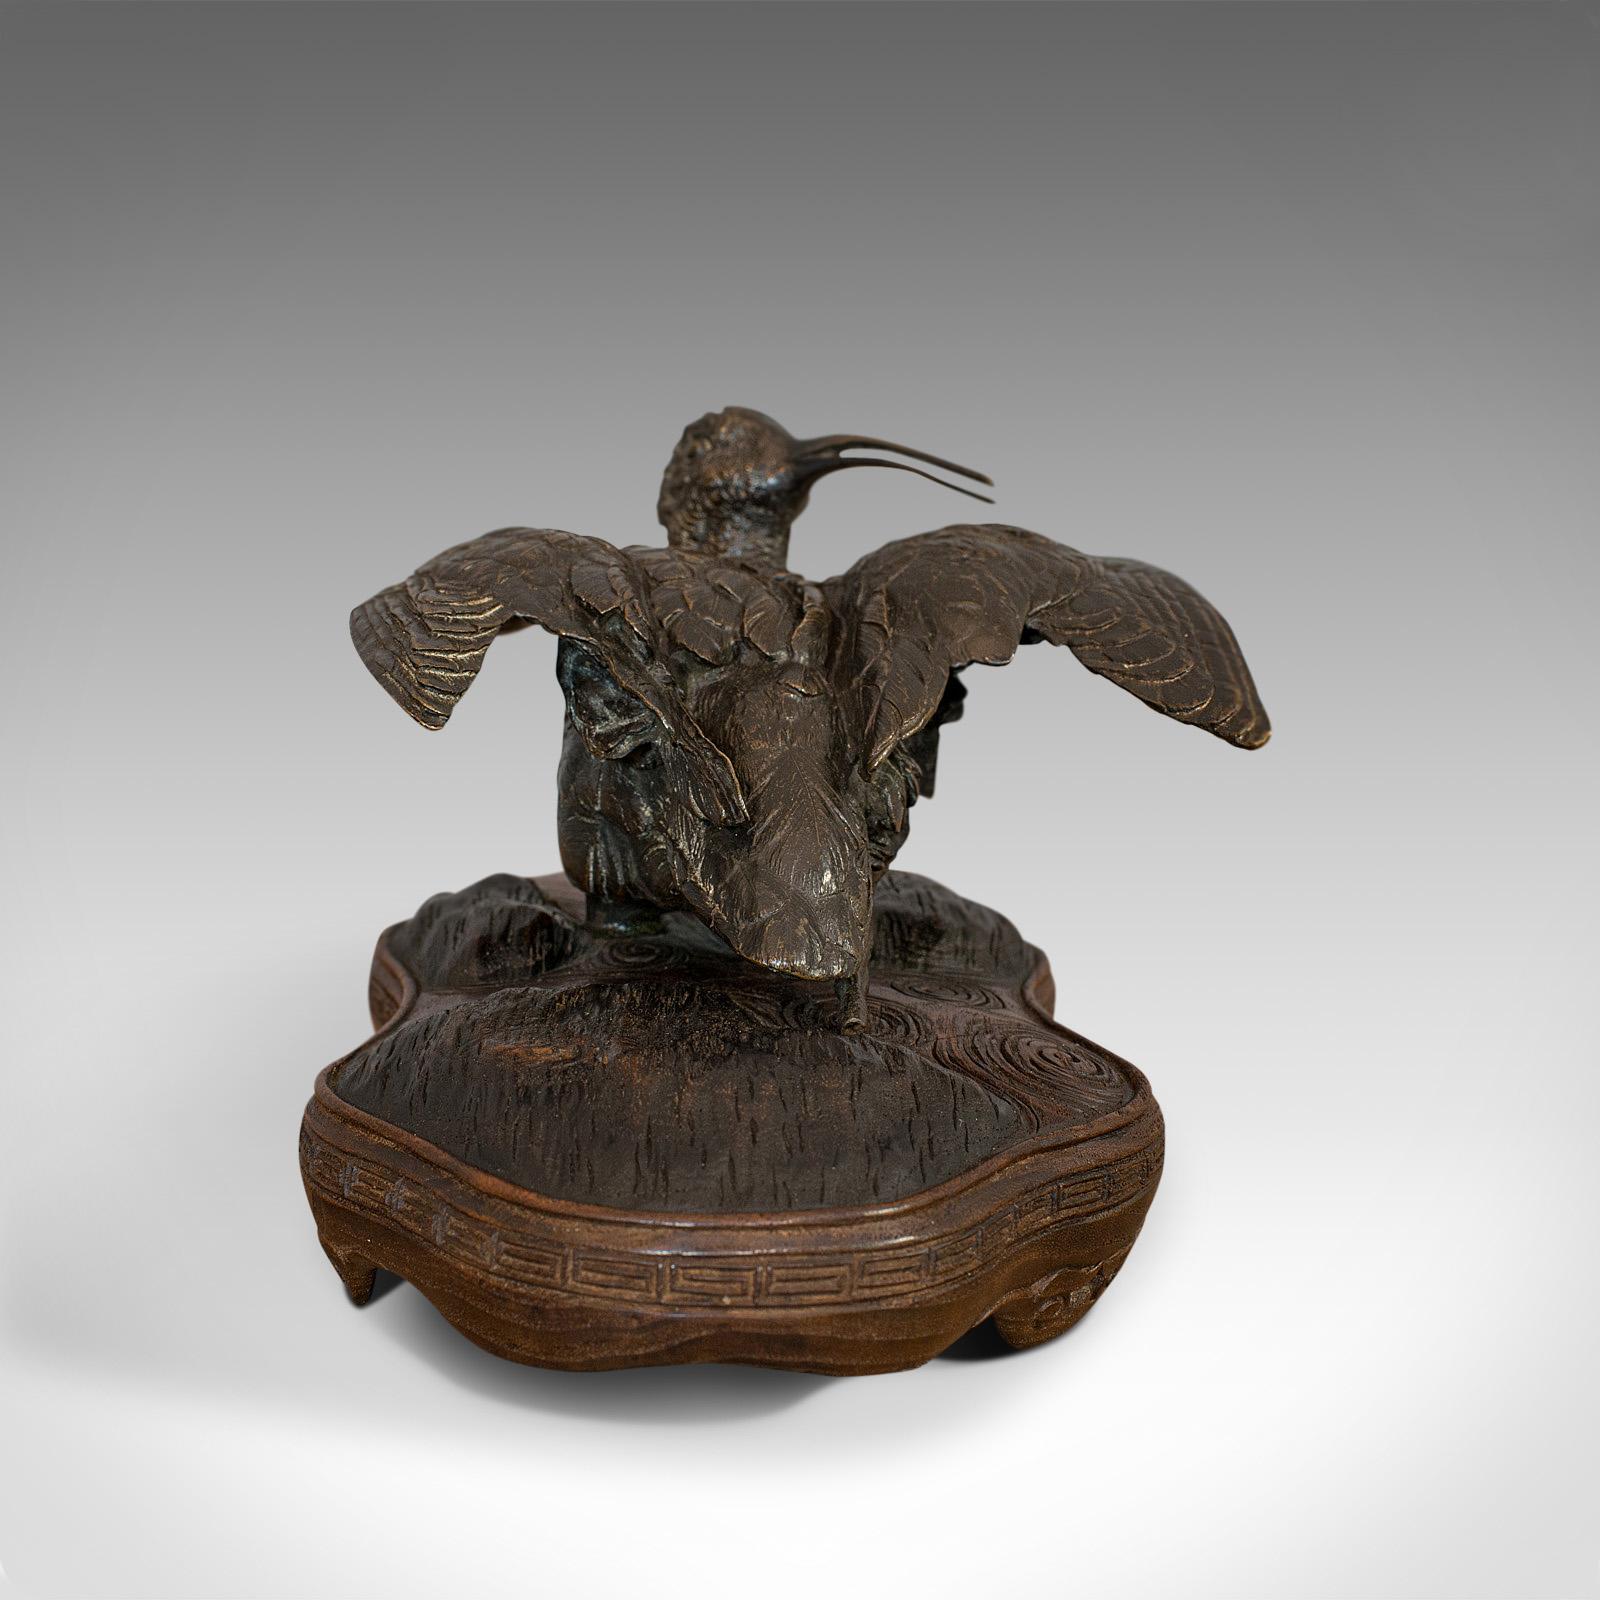 Il s'agit d'une étude ancienne d'un courlis. Petit oiseau décoratif oriental, en bronze et acajou, datant de la fin du XIXe siècle, vers 1900.

L'oiseau sculpté dans une pose de bain de soleil, les ailes relevées
Affiche une patine vieillie